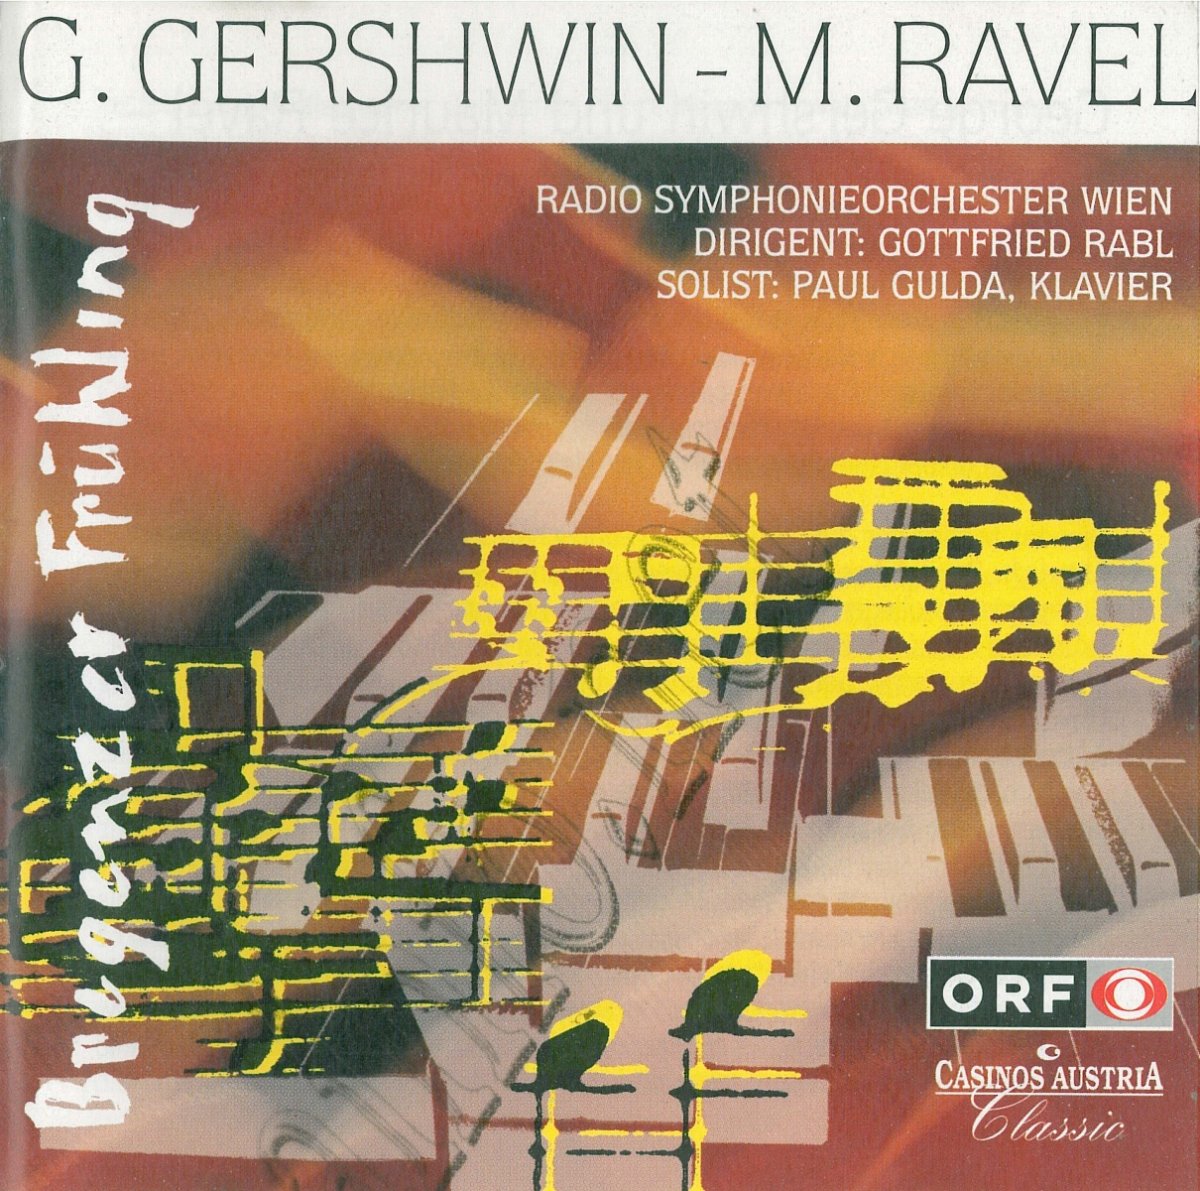 George Gershwin - Maurice Ravel - klik hier